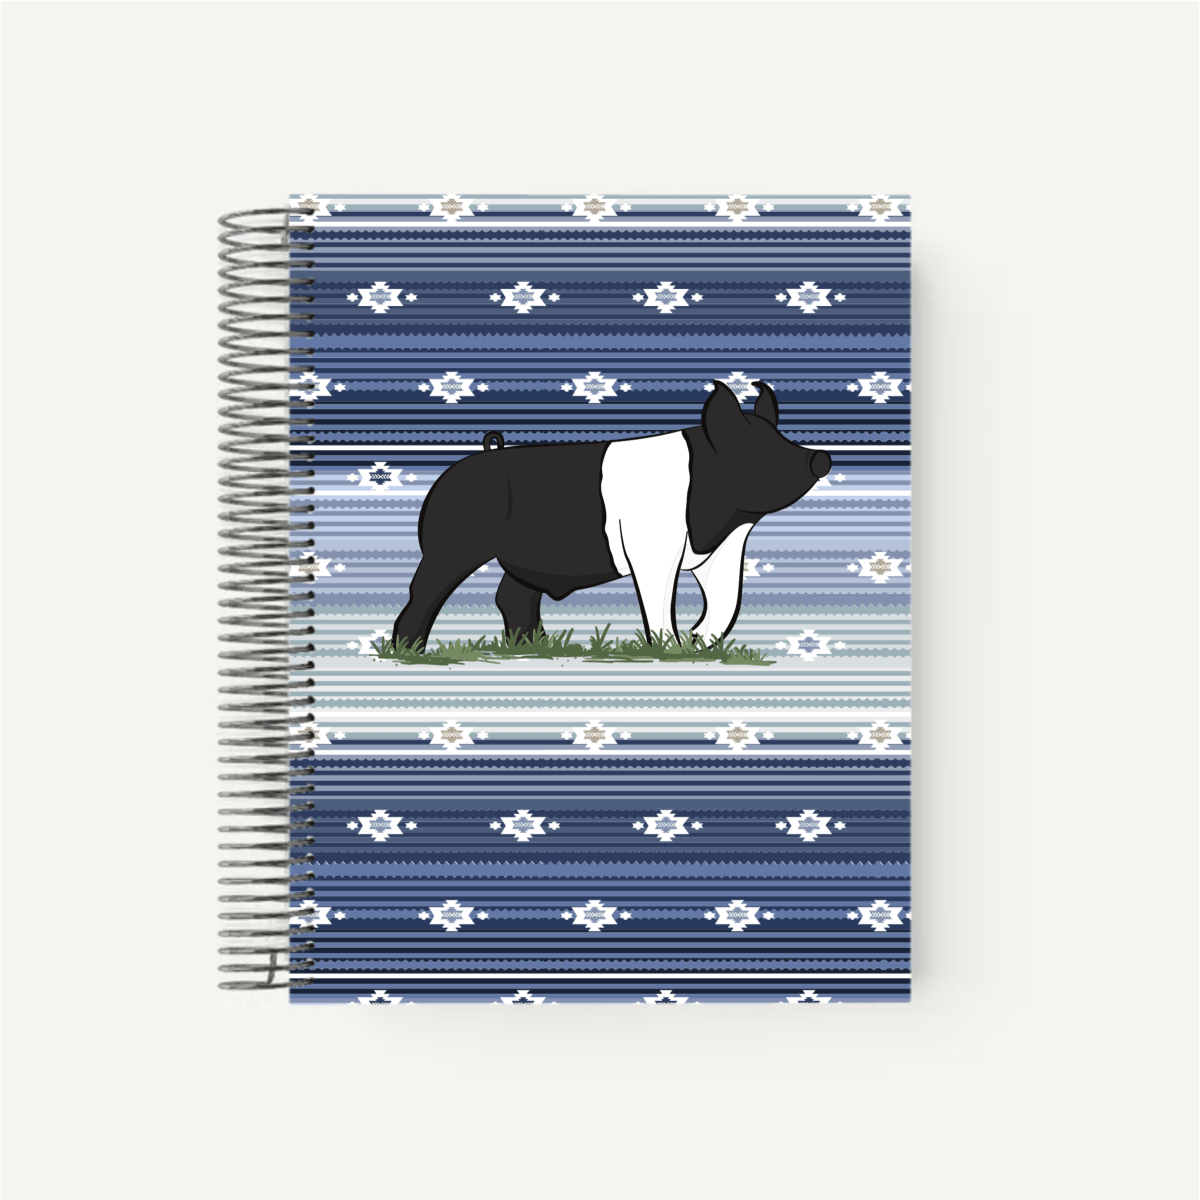 Personalized-Livestock-Farrowing Record Planner - Serape Cover